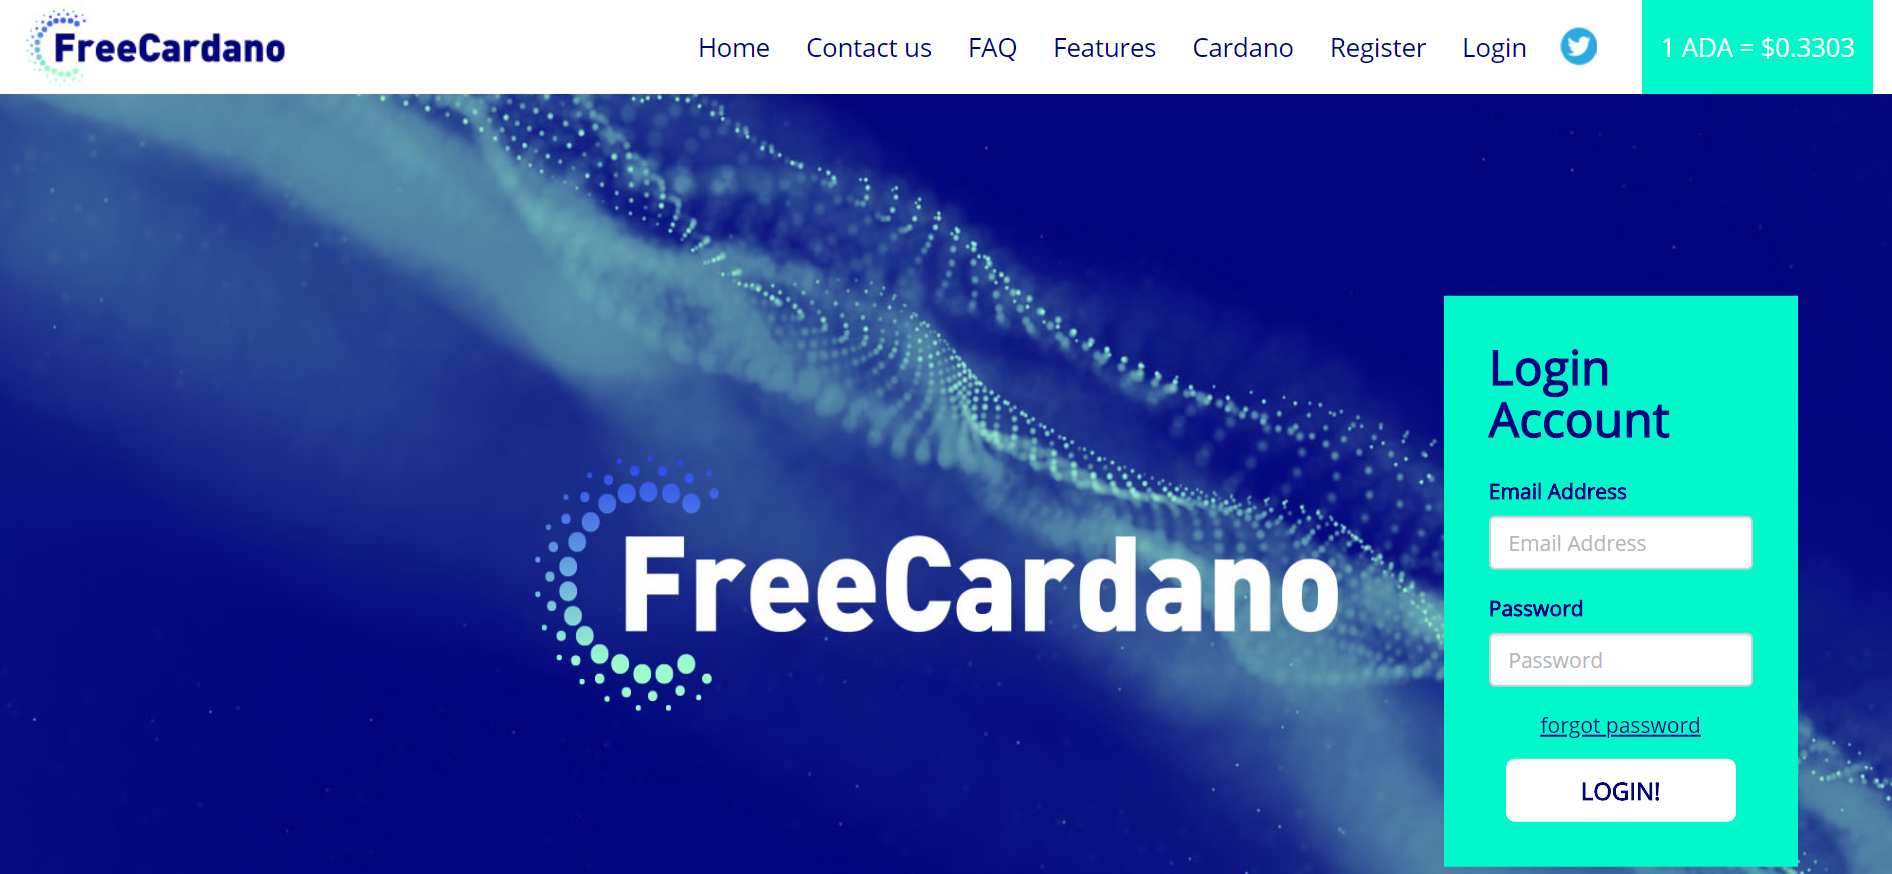 Come guadagnare online e trovare referrals diretti grati con Free Cardano